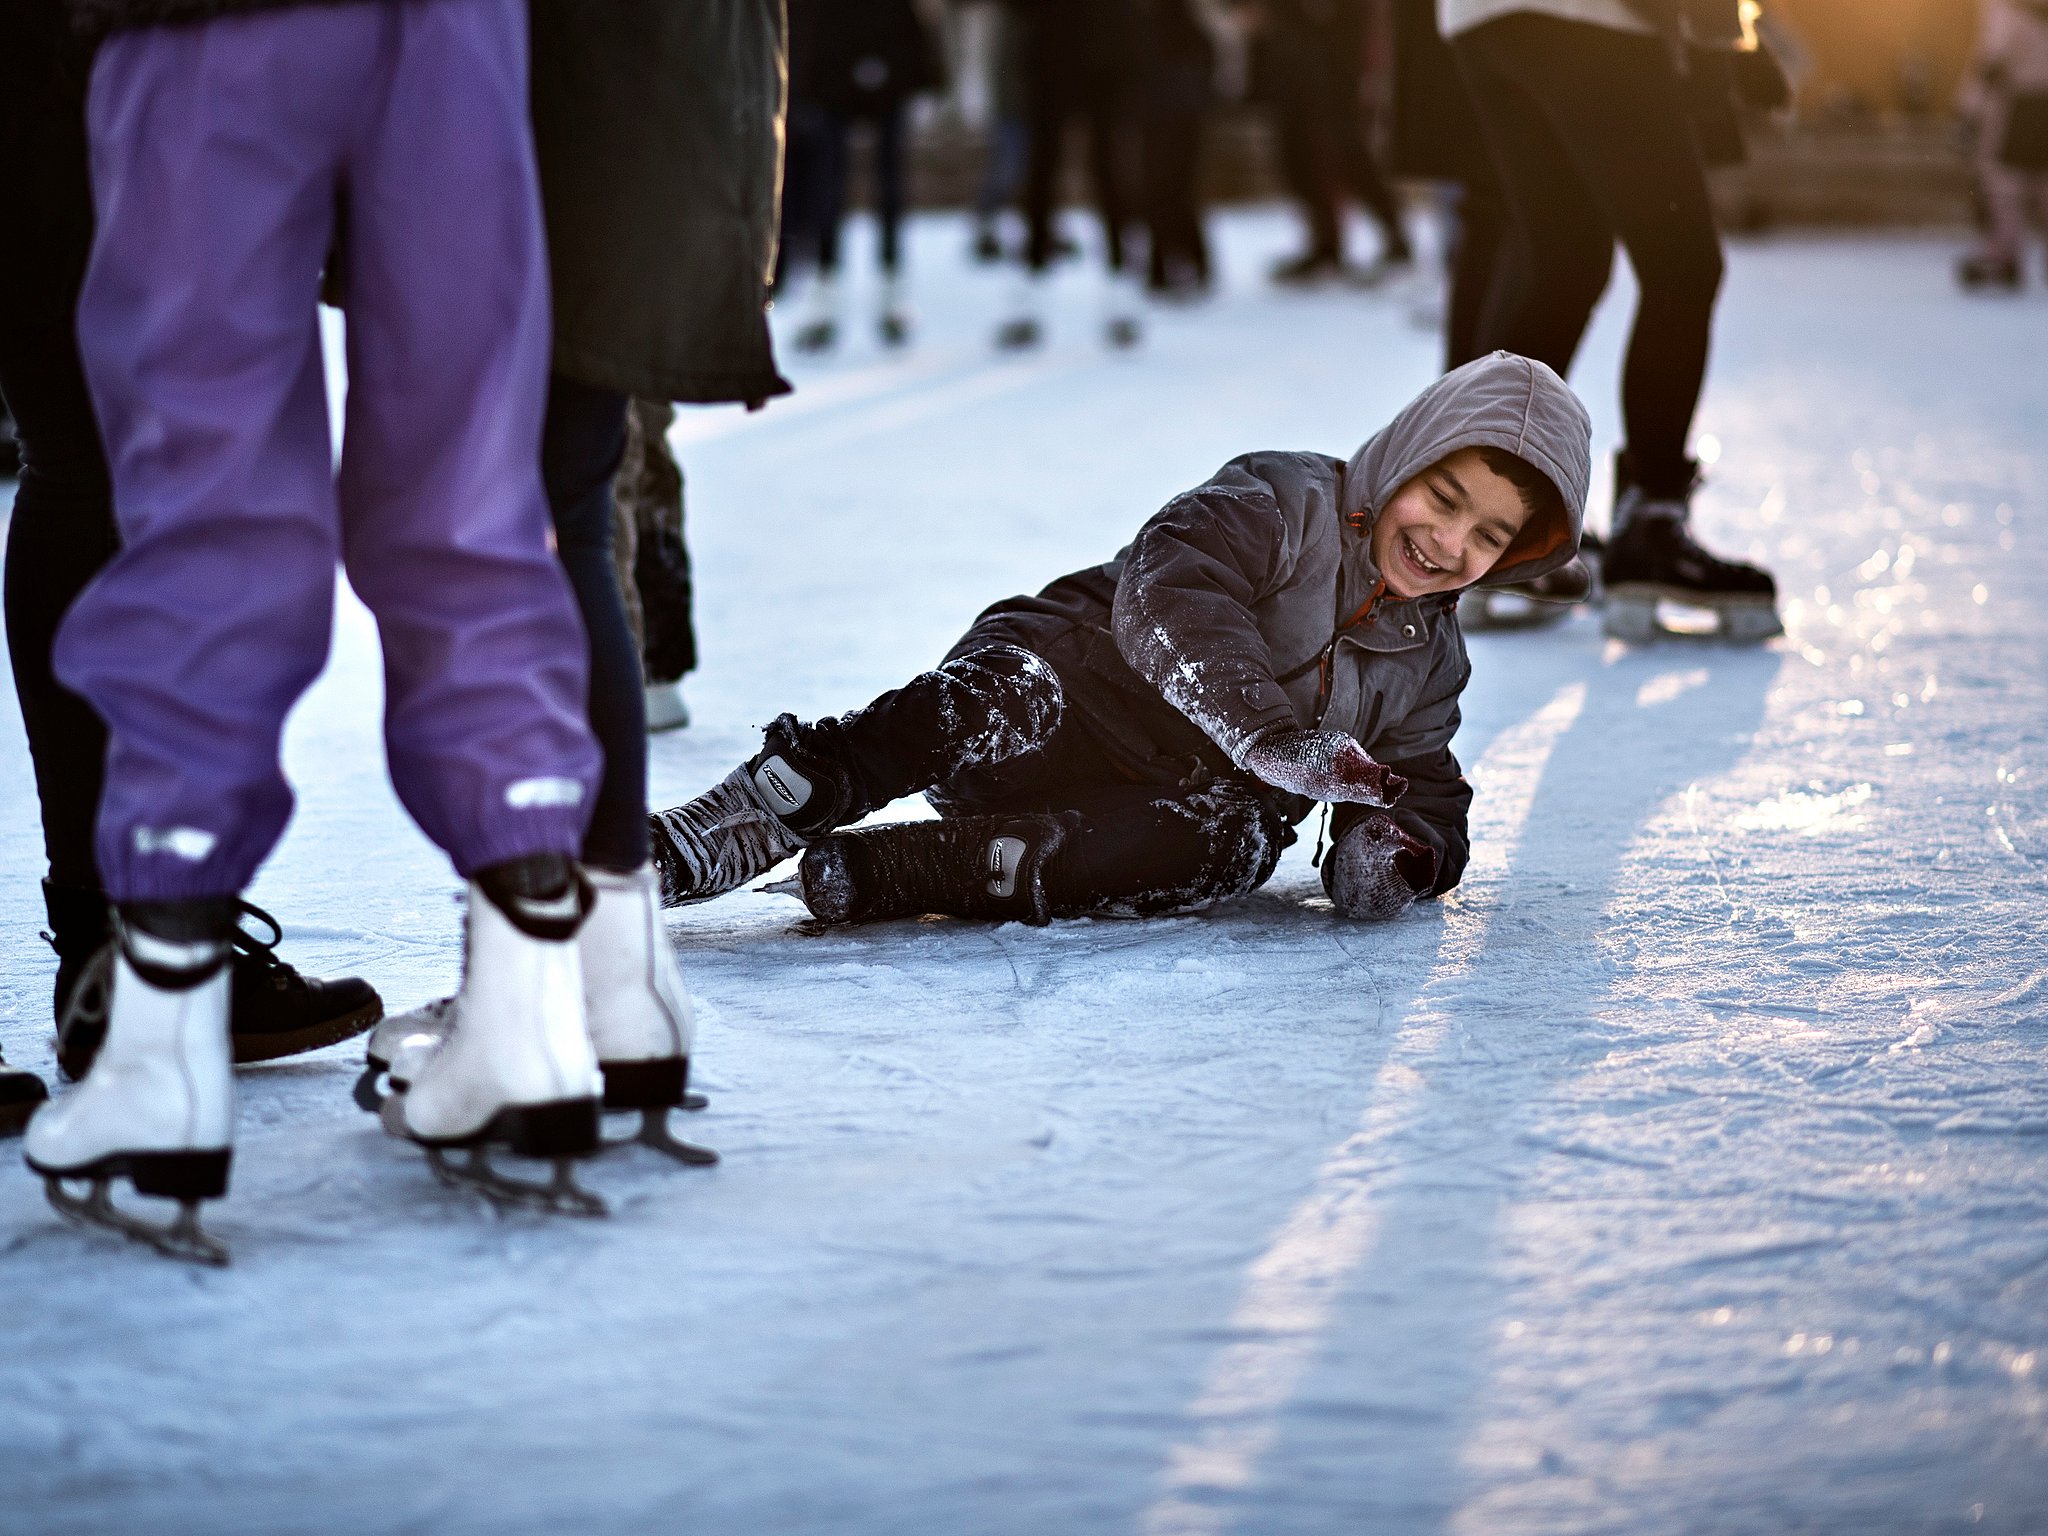 København opgiver spritny skøjtebane denne vinter TV Kosmopol